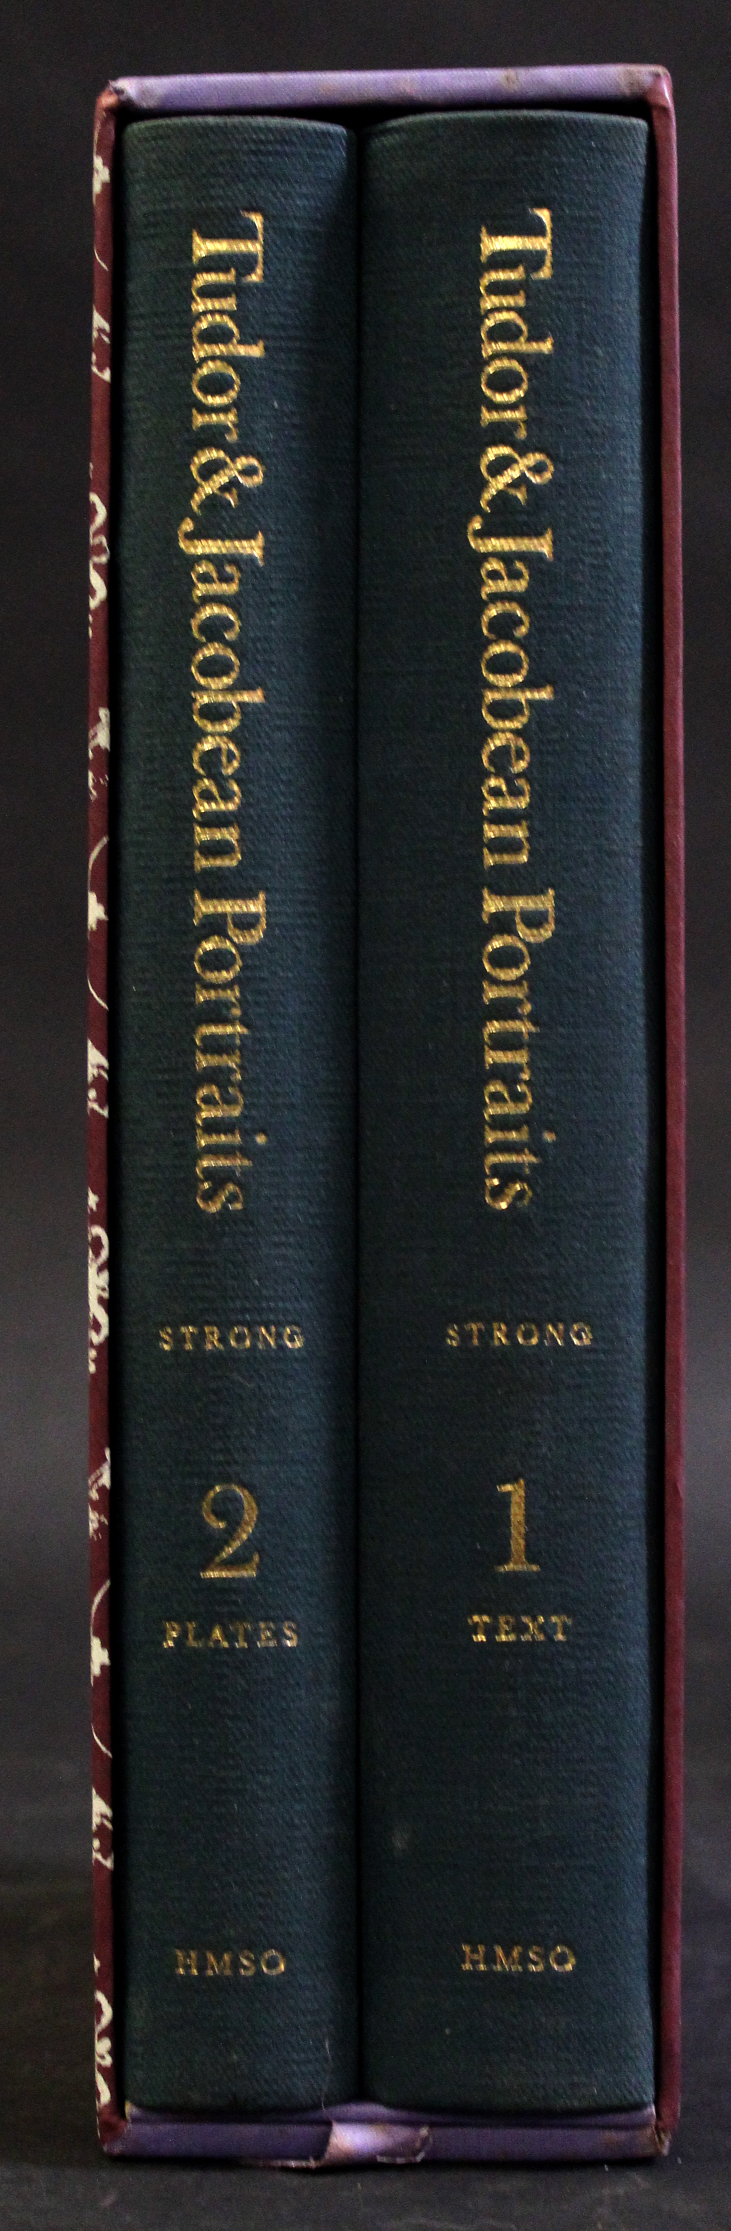 ROY STRONG: TUDOR AND JACOBEAN PORTRAITS, HMSO, 1969, 1st edition, 2 vols, 4to, original cloth gilt,